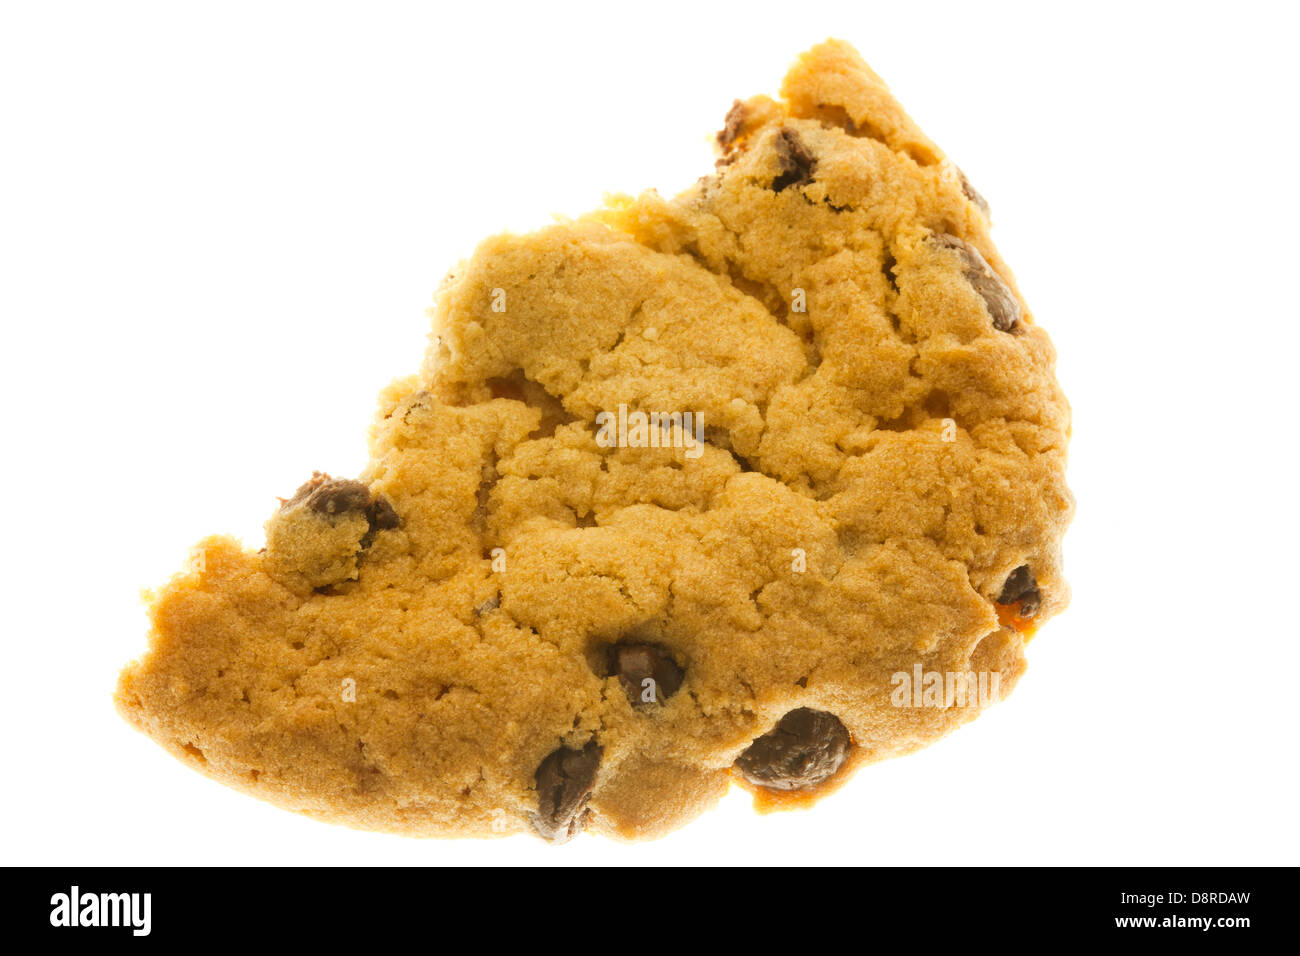 La mitad comido chocolate chip cookie Foto de stock